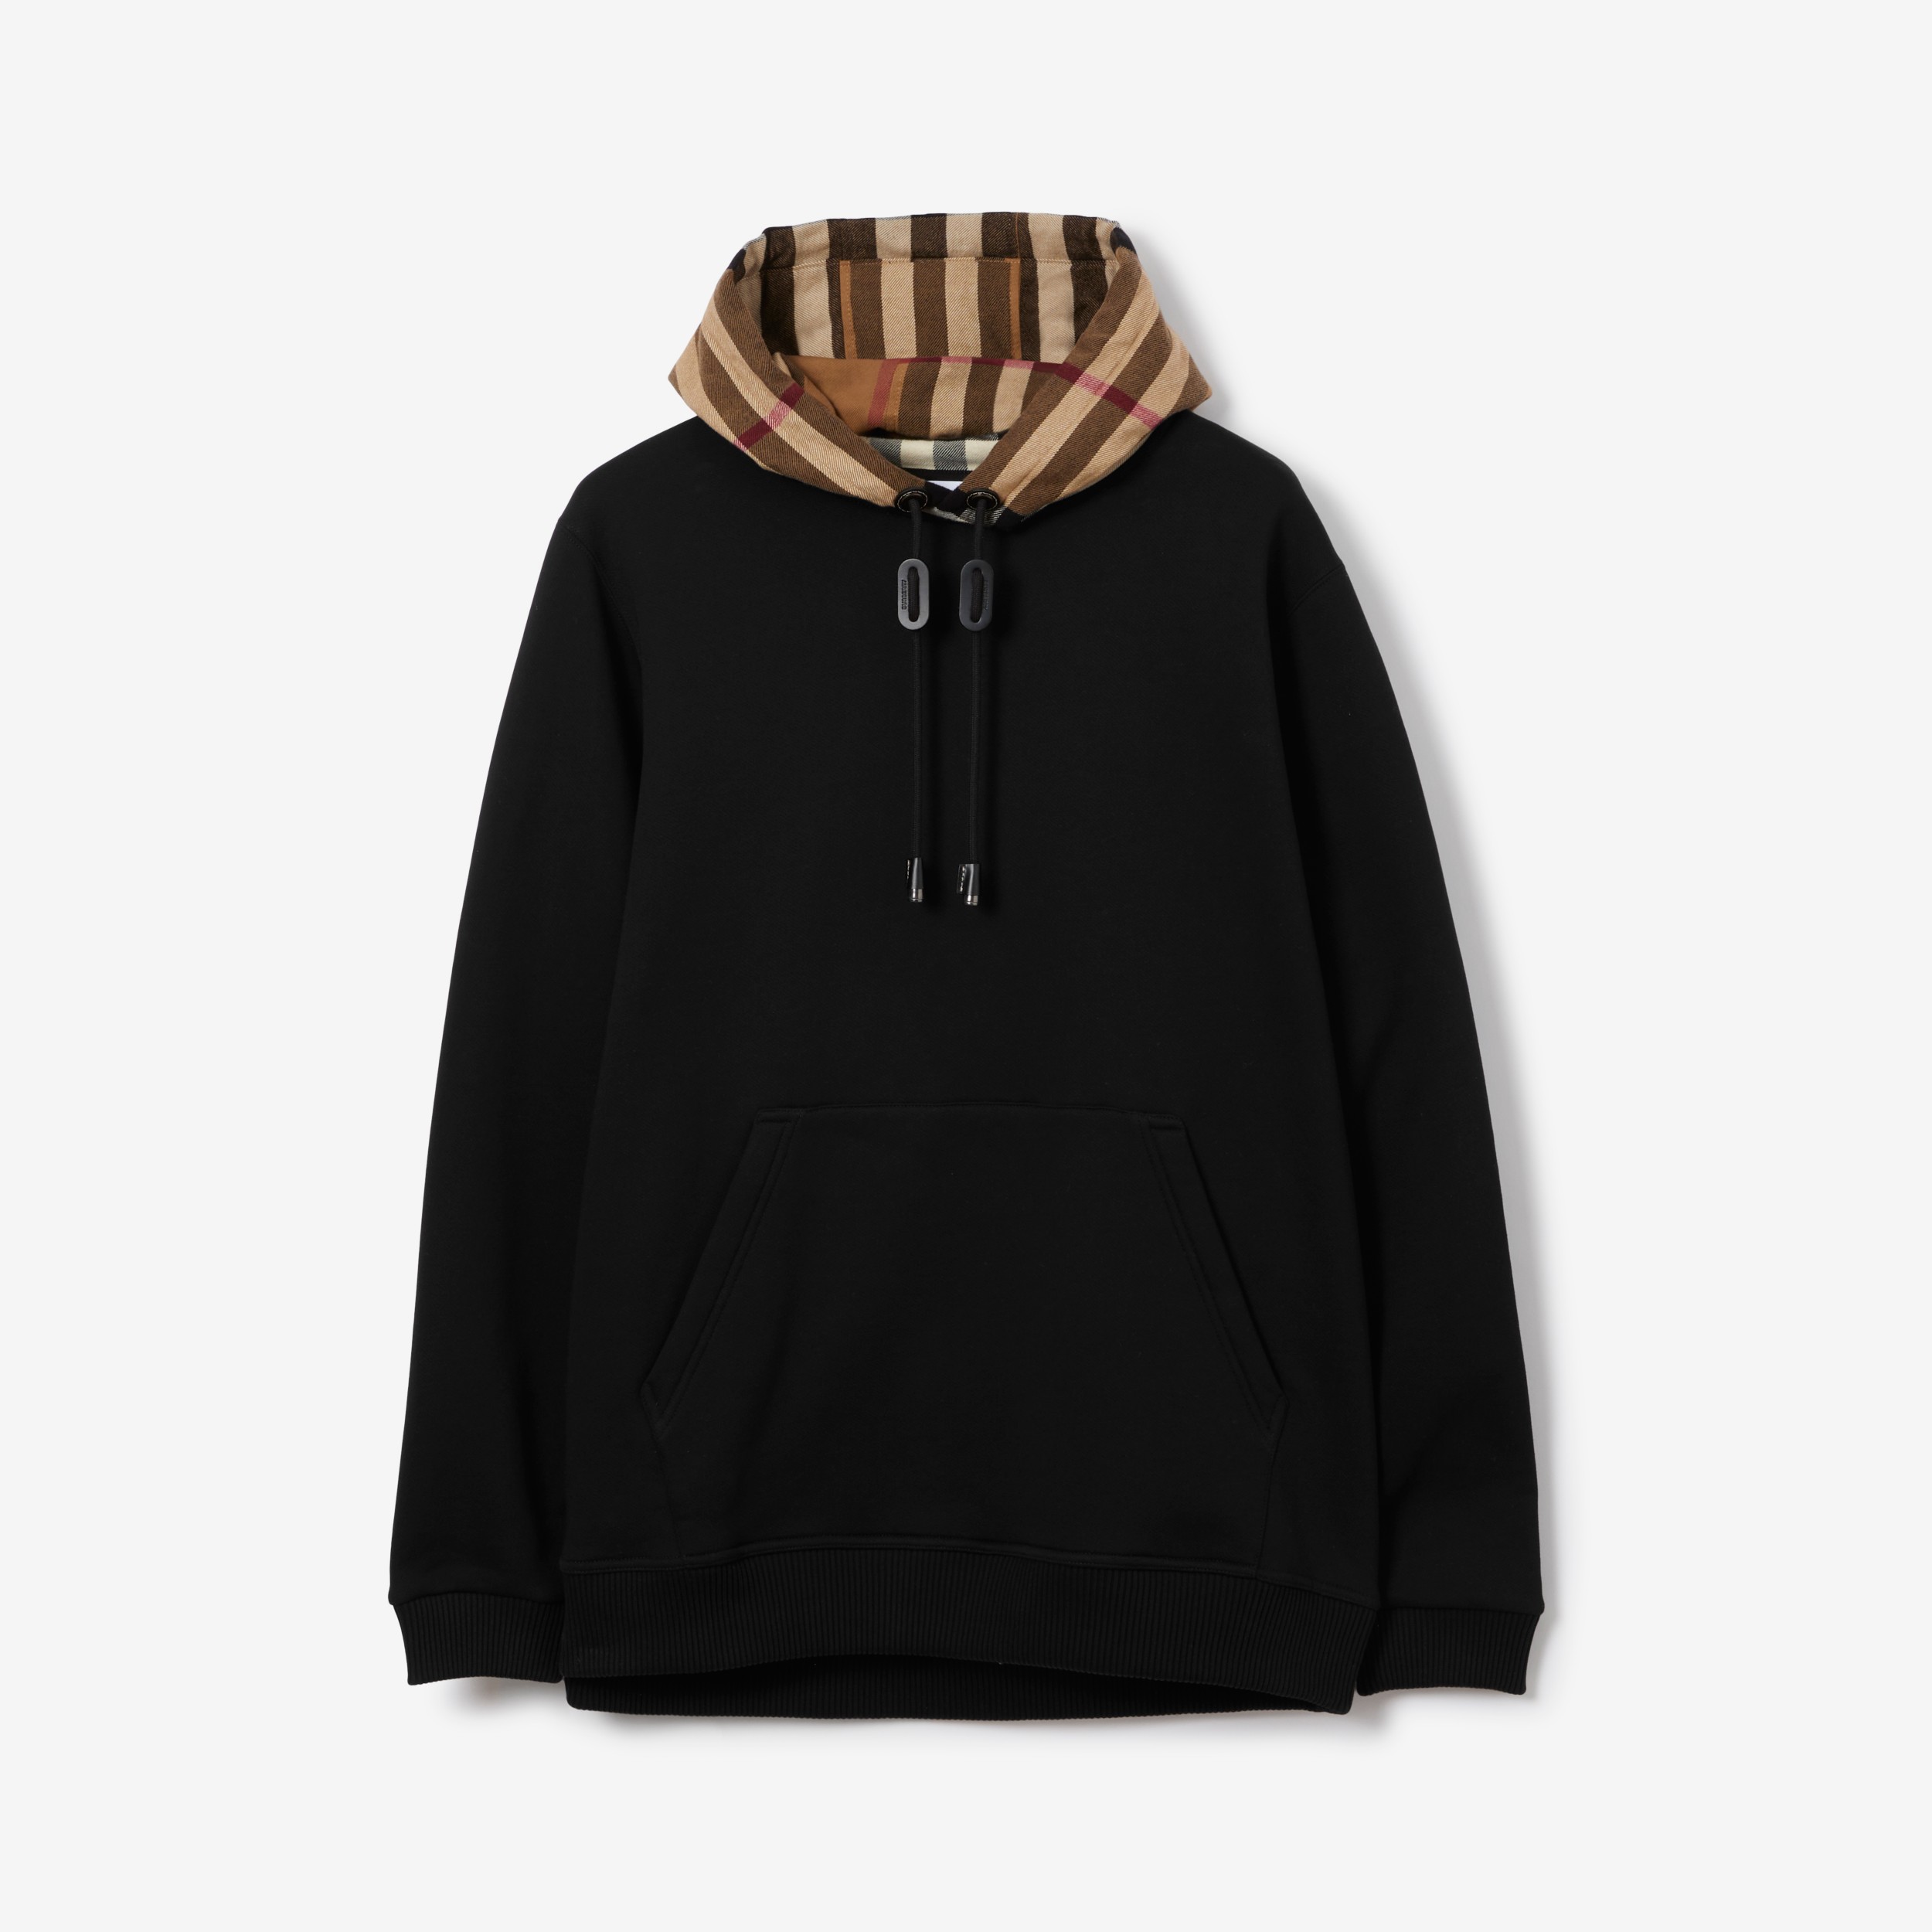 Actualizar 91+ imagen burberry men’s hooded sweatshirt